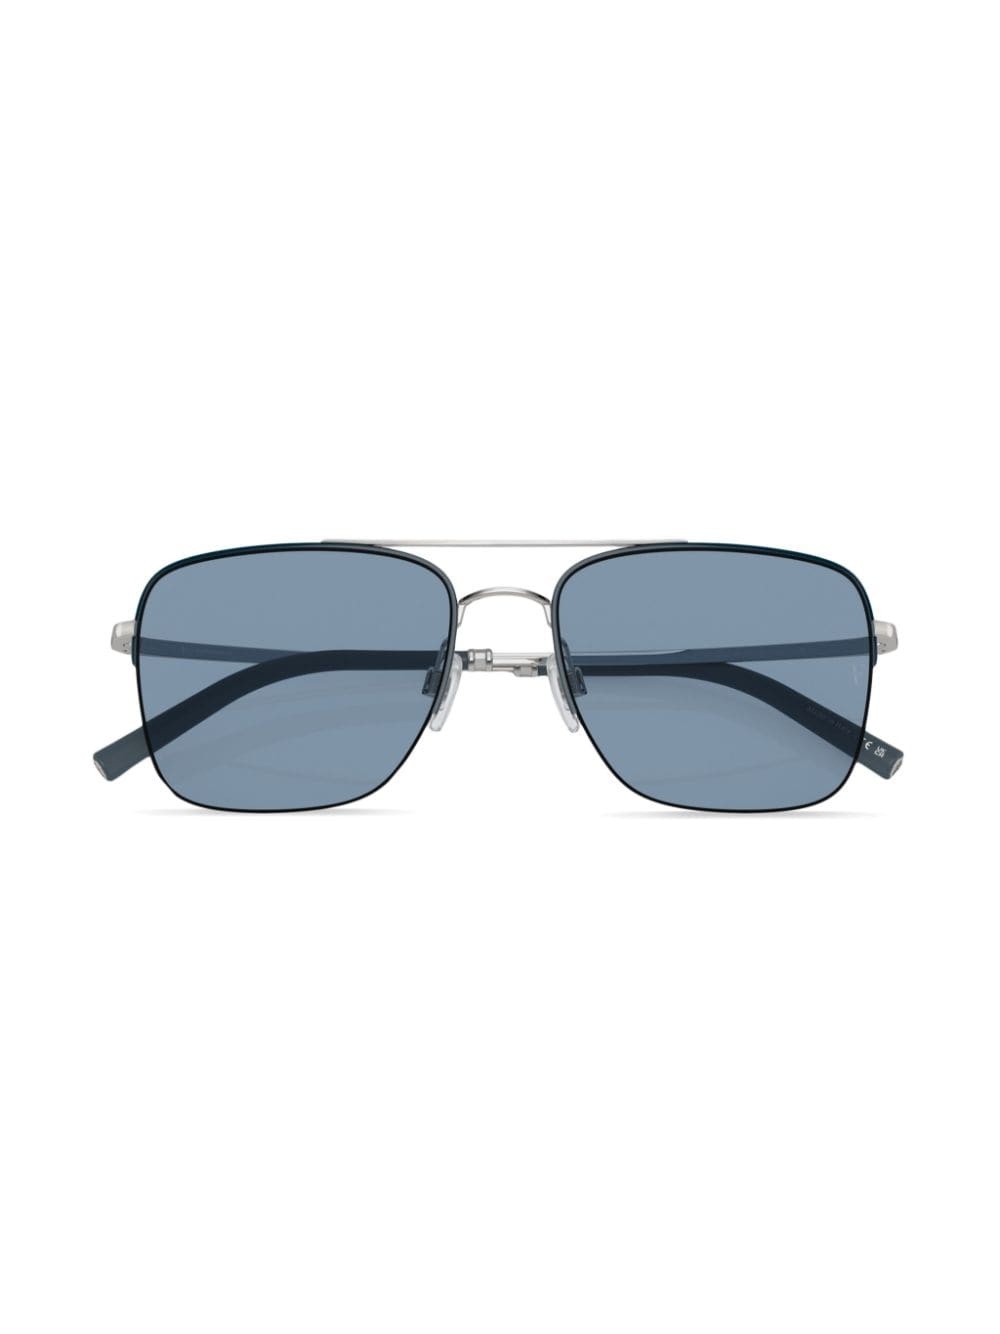 R-2 square-frame sunglasses - 5